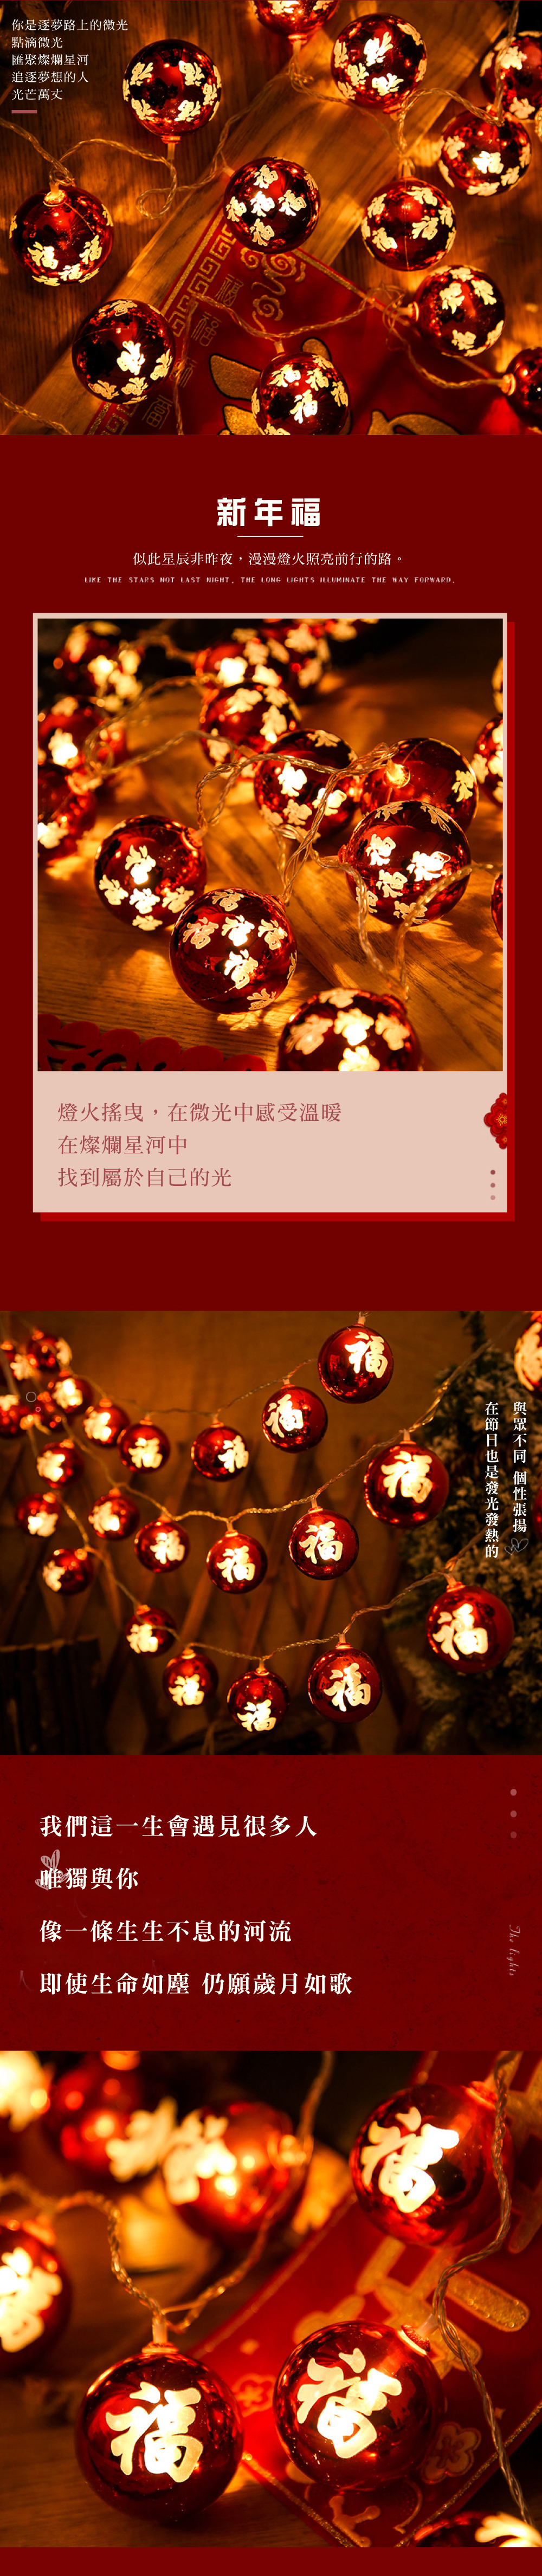 節慶派對佈置館 新年裝飾USB福字燈串 1.5m 大福字